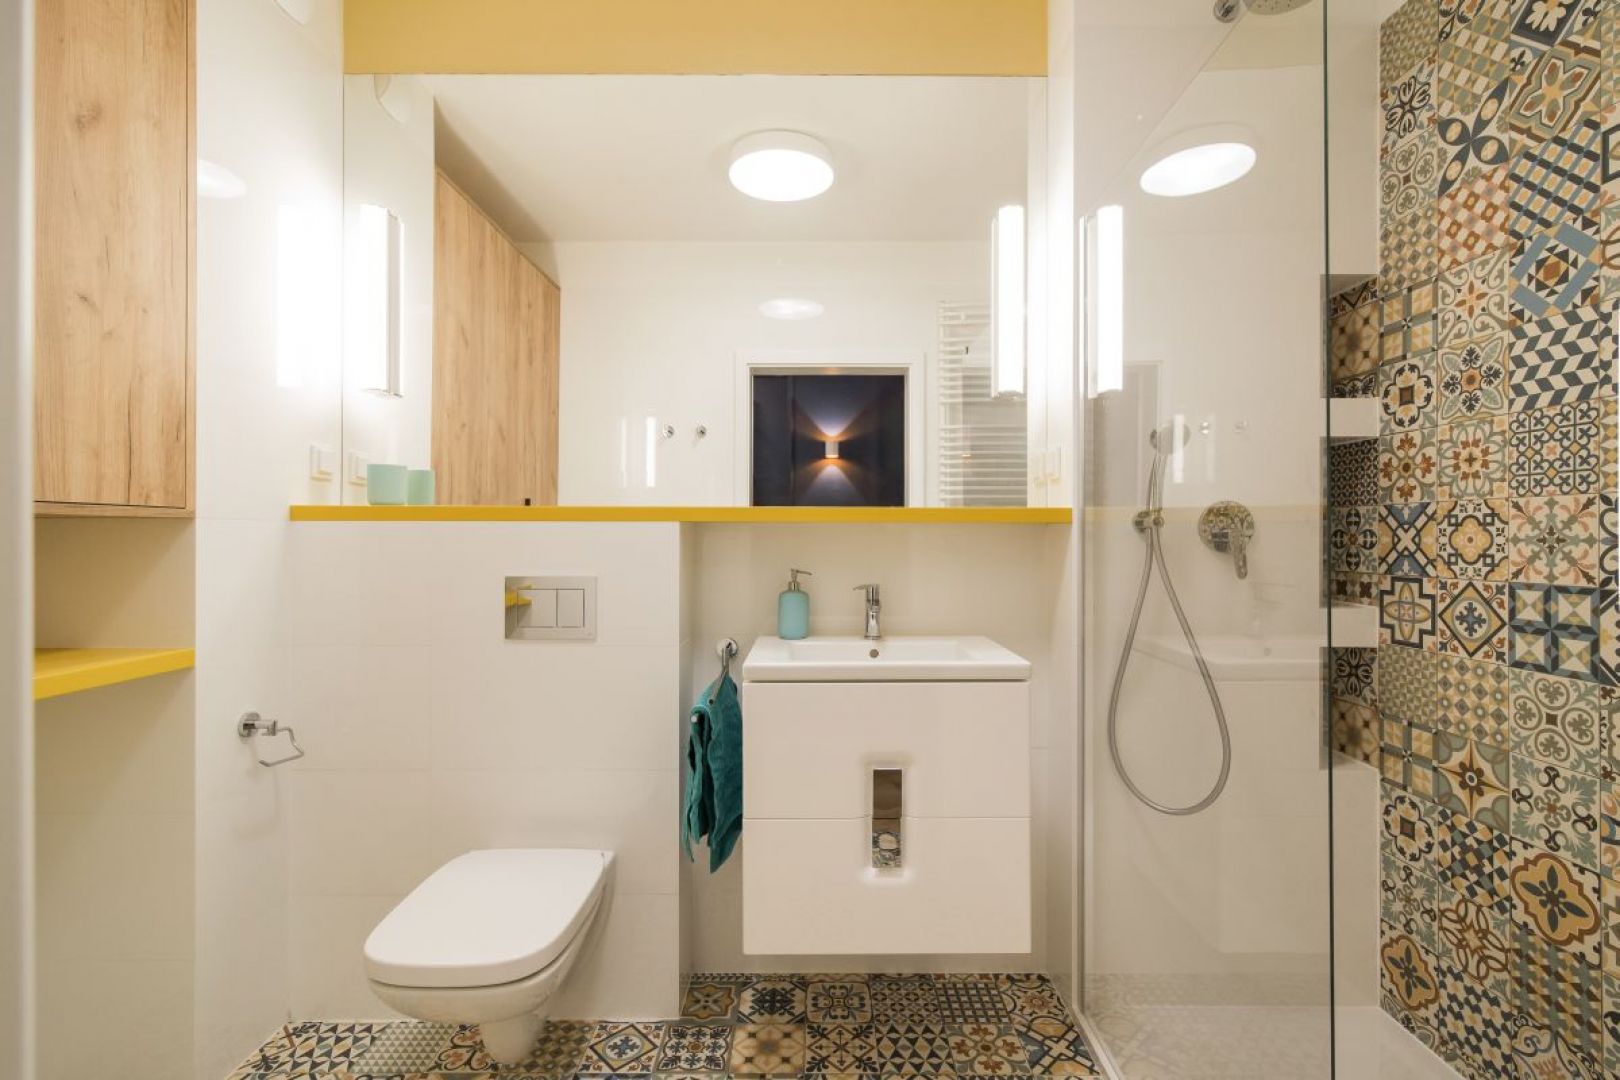 Klimat łazienki został podkreślony za pomocą patchworkowego wzoru płytek. Fot. Kodo